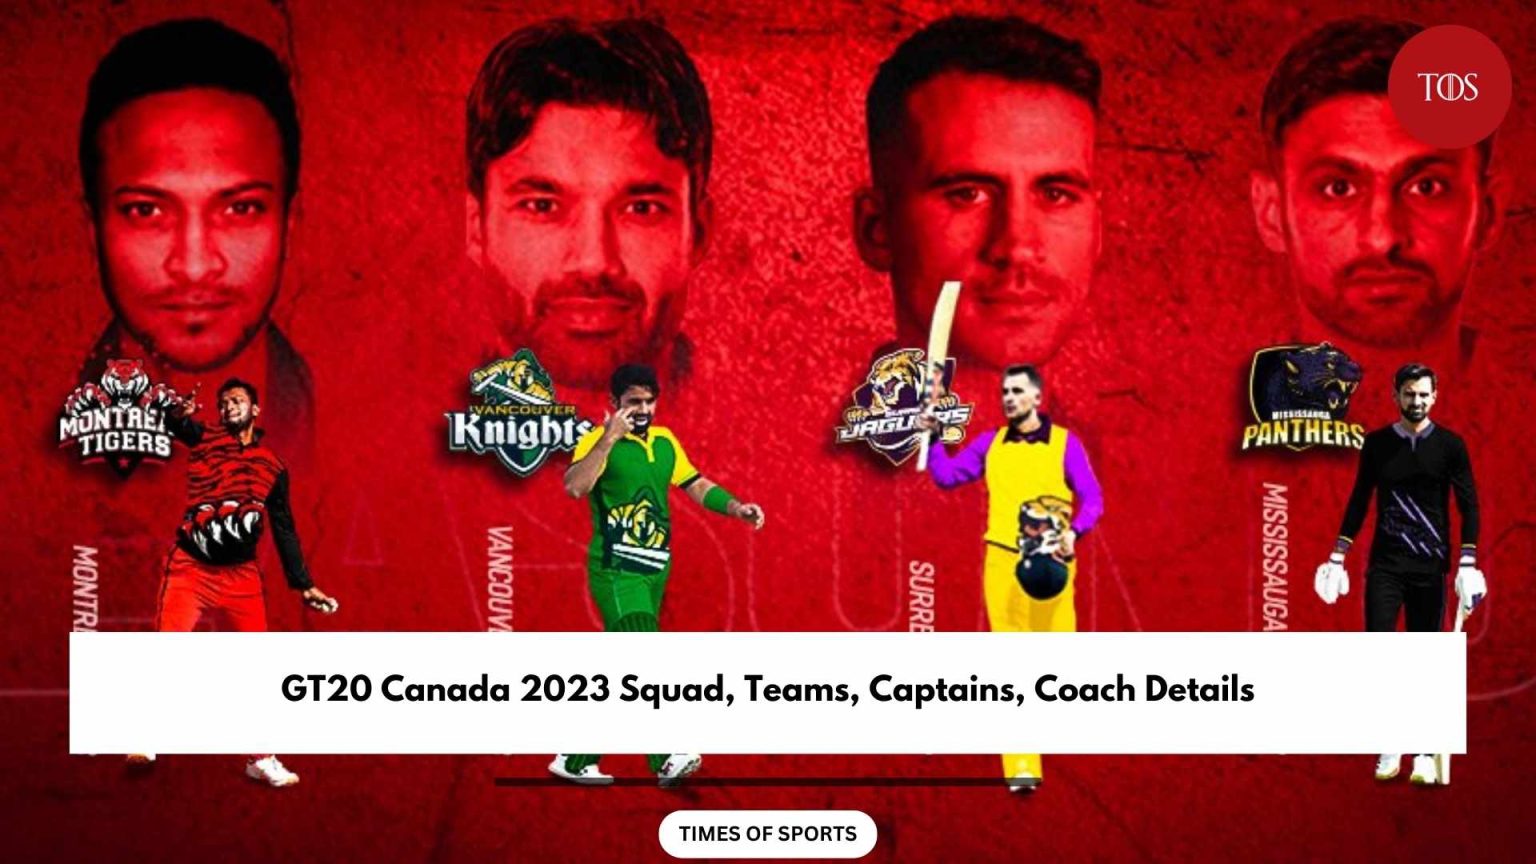 GT20 Canada 2023 Squad, Teams, Captains, Coach Details